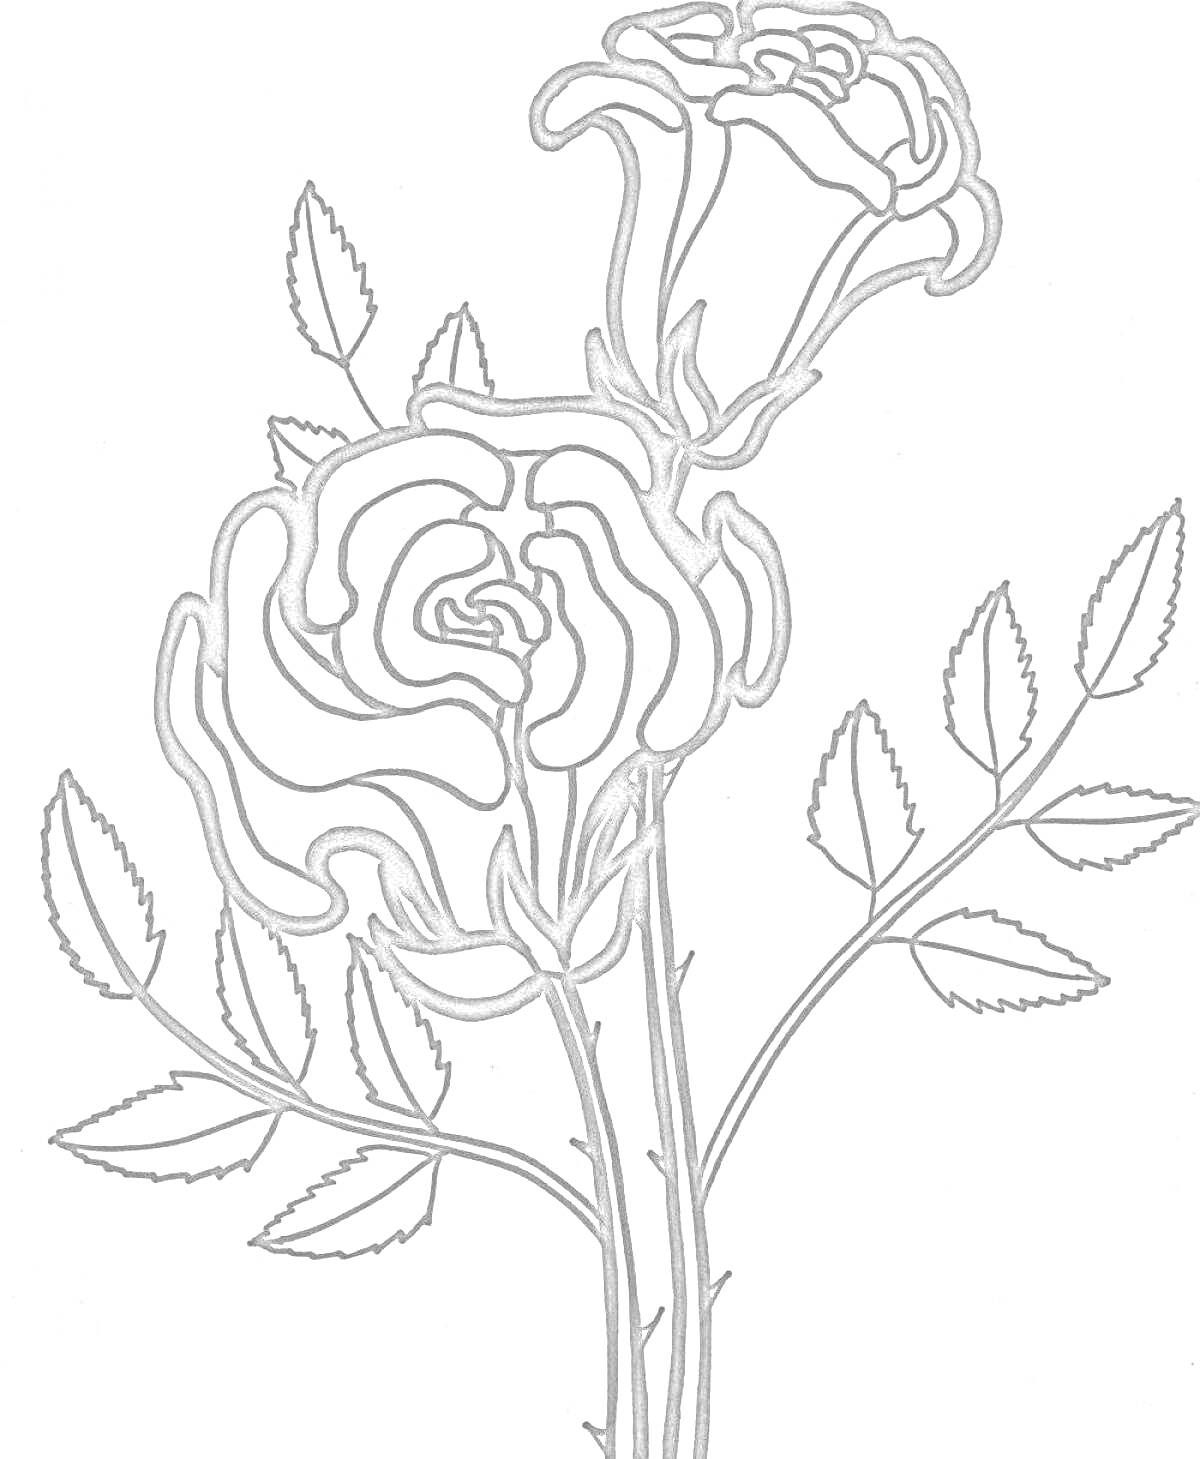 Раскраска Две распустившиеся розы на ветке с листьями